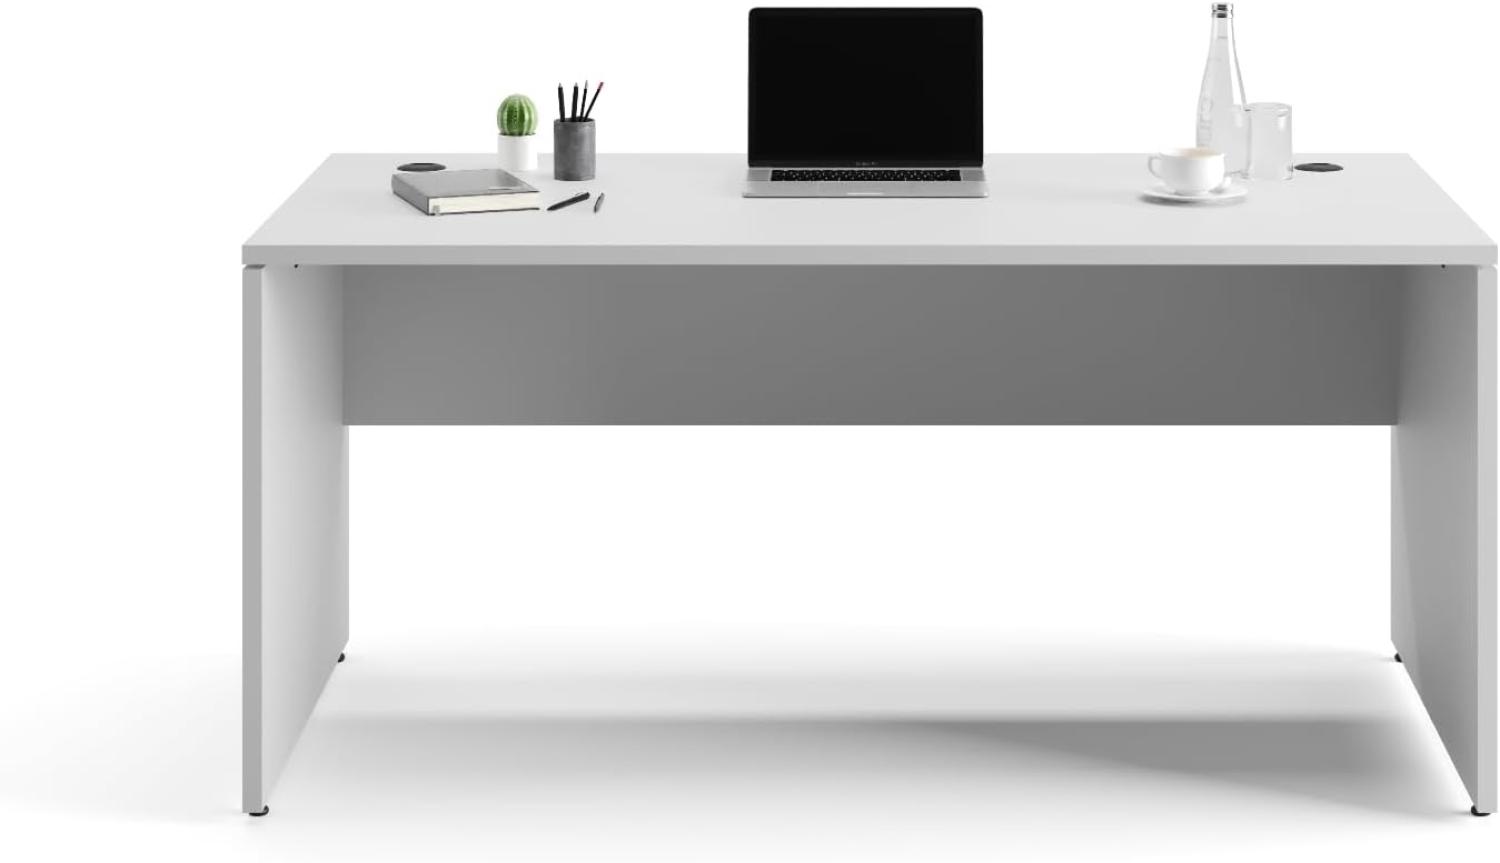 Furni24 Schreibtisch fürs Arbeitszimmer und Home Office - Großer laminierter Computertisch aus Holz, 2 Kabeldurchlässe, Bodengleiter, 2-Personen-Arbeitsplatz (Grau, 180x80x75 cm) Bild 1